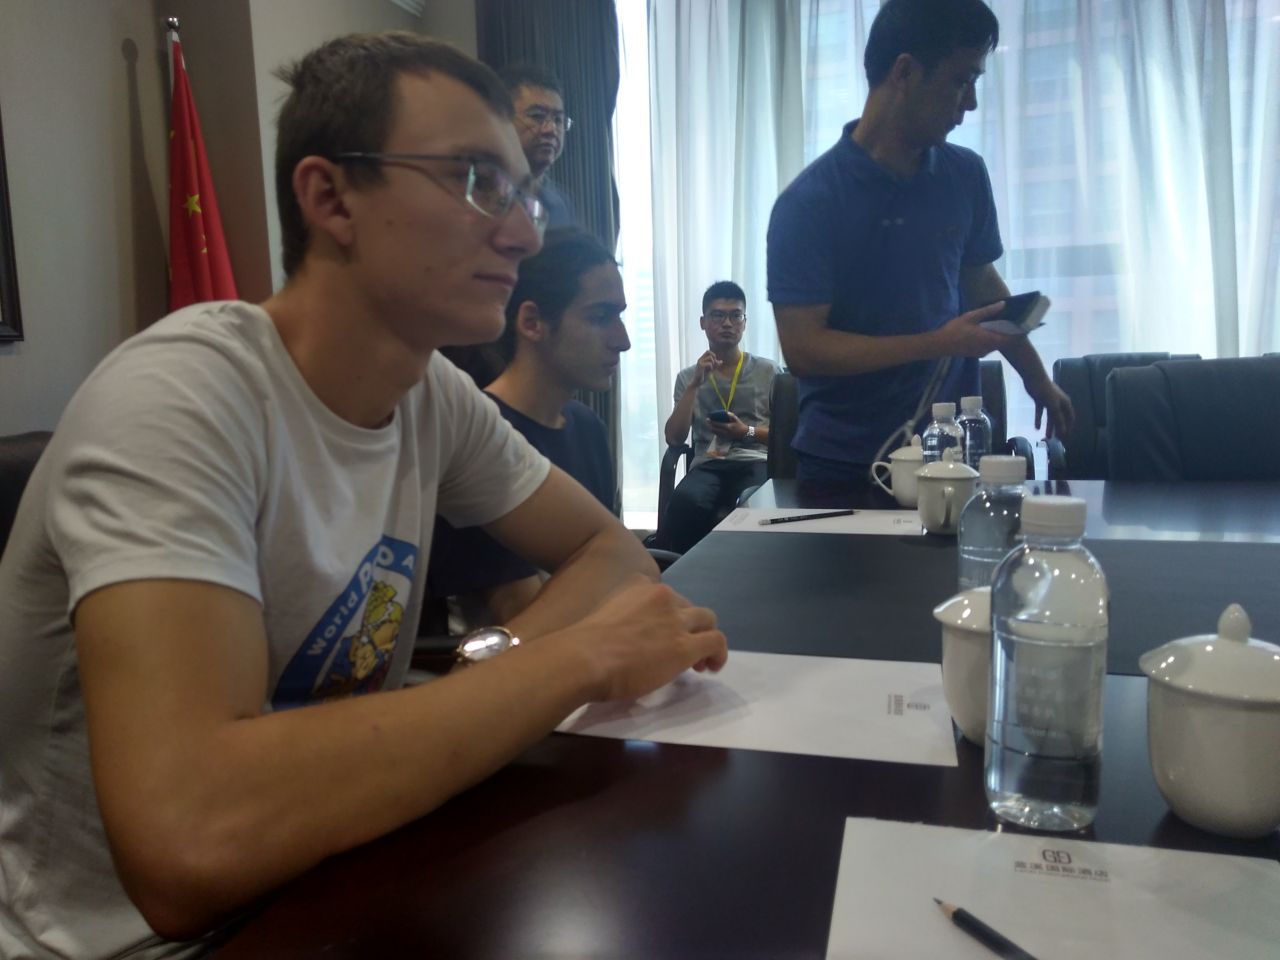 Sinan Djepov at the meeting